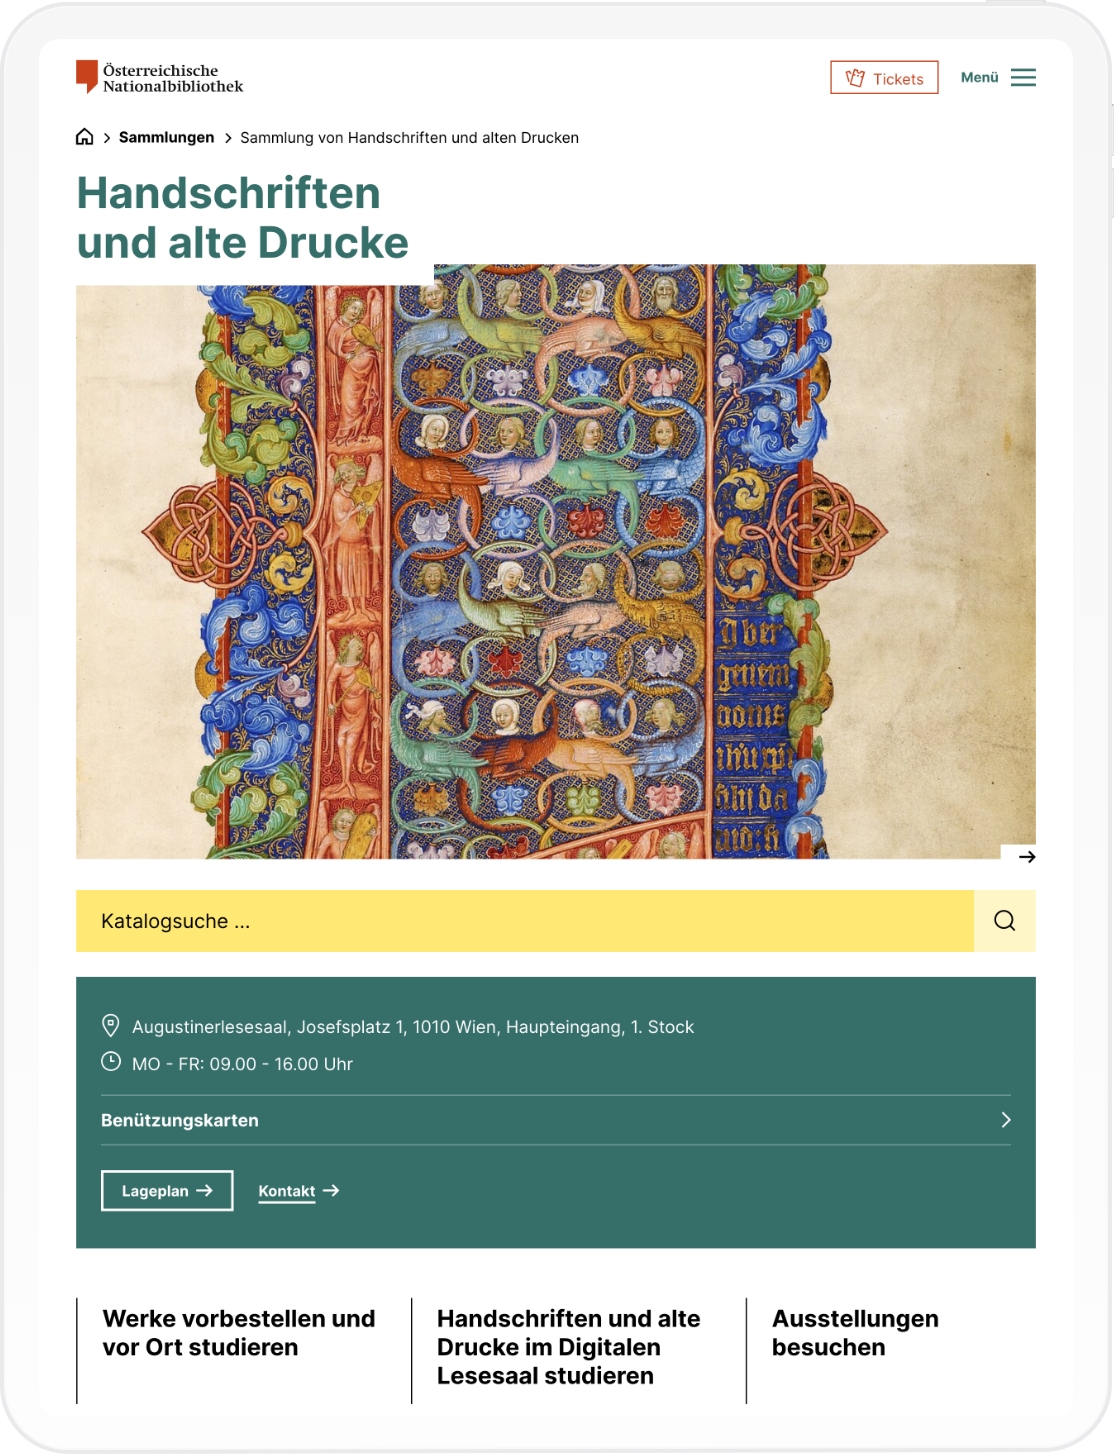 Tablet-Mockup der Sammlungs-Startseite der Österreichischen Nationalbibliothek